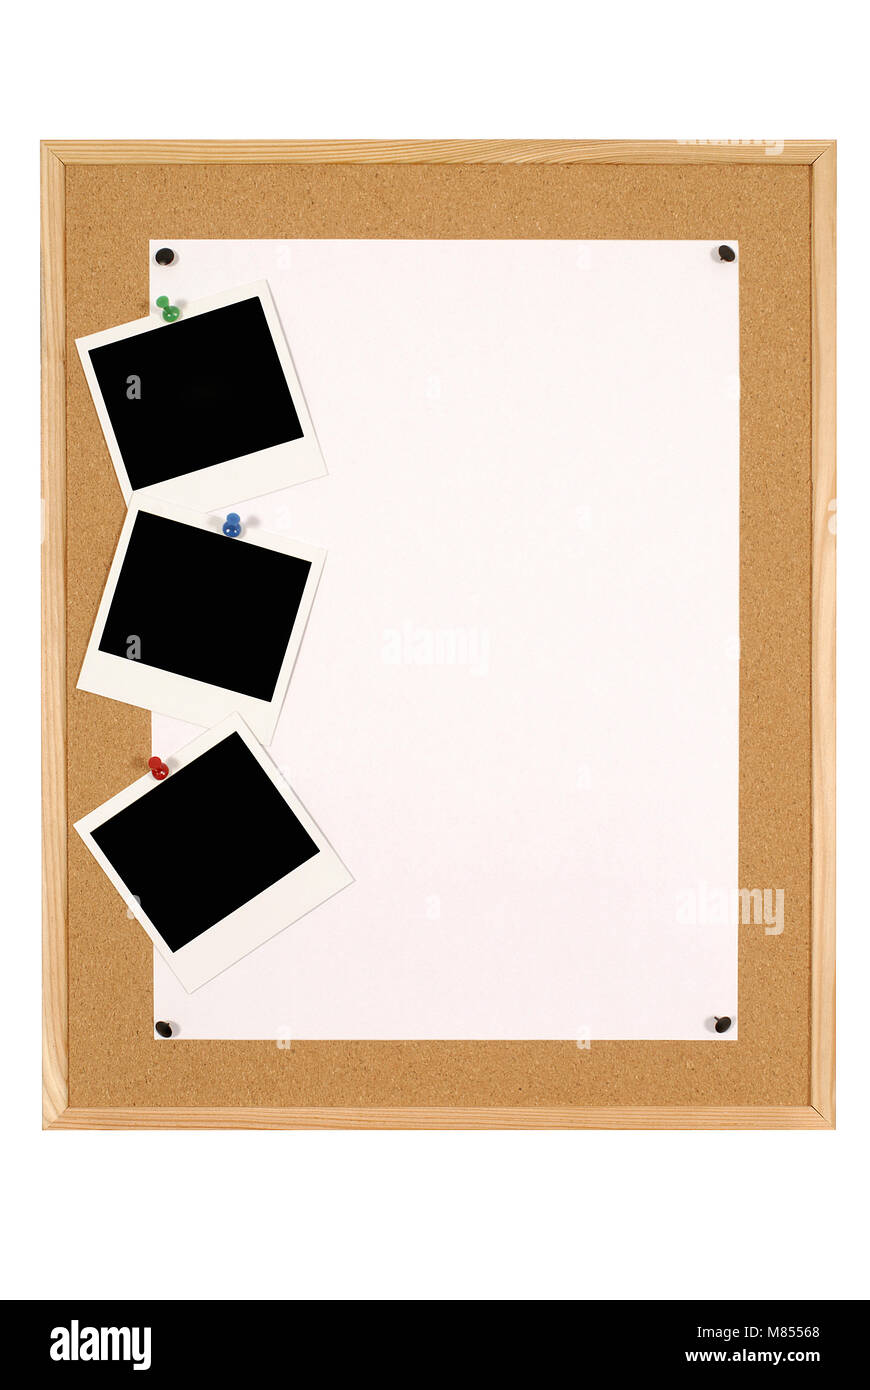 Nuevo tablon informativo de corcho con marco vintage blanco